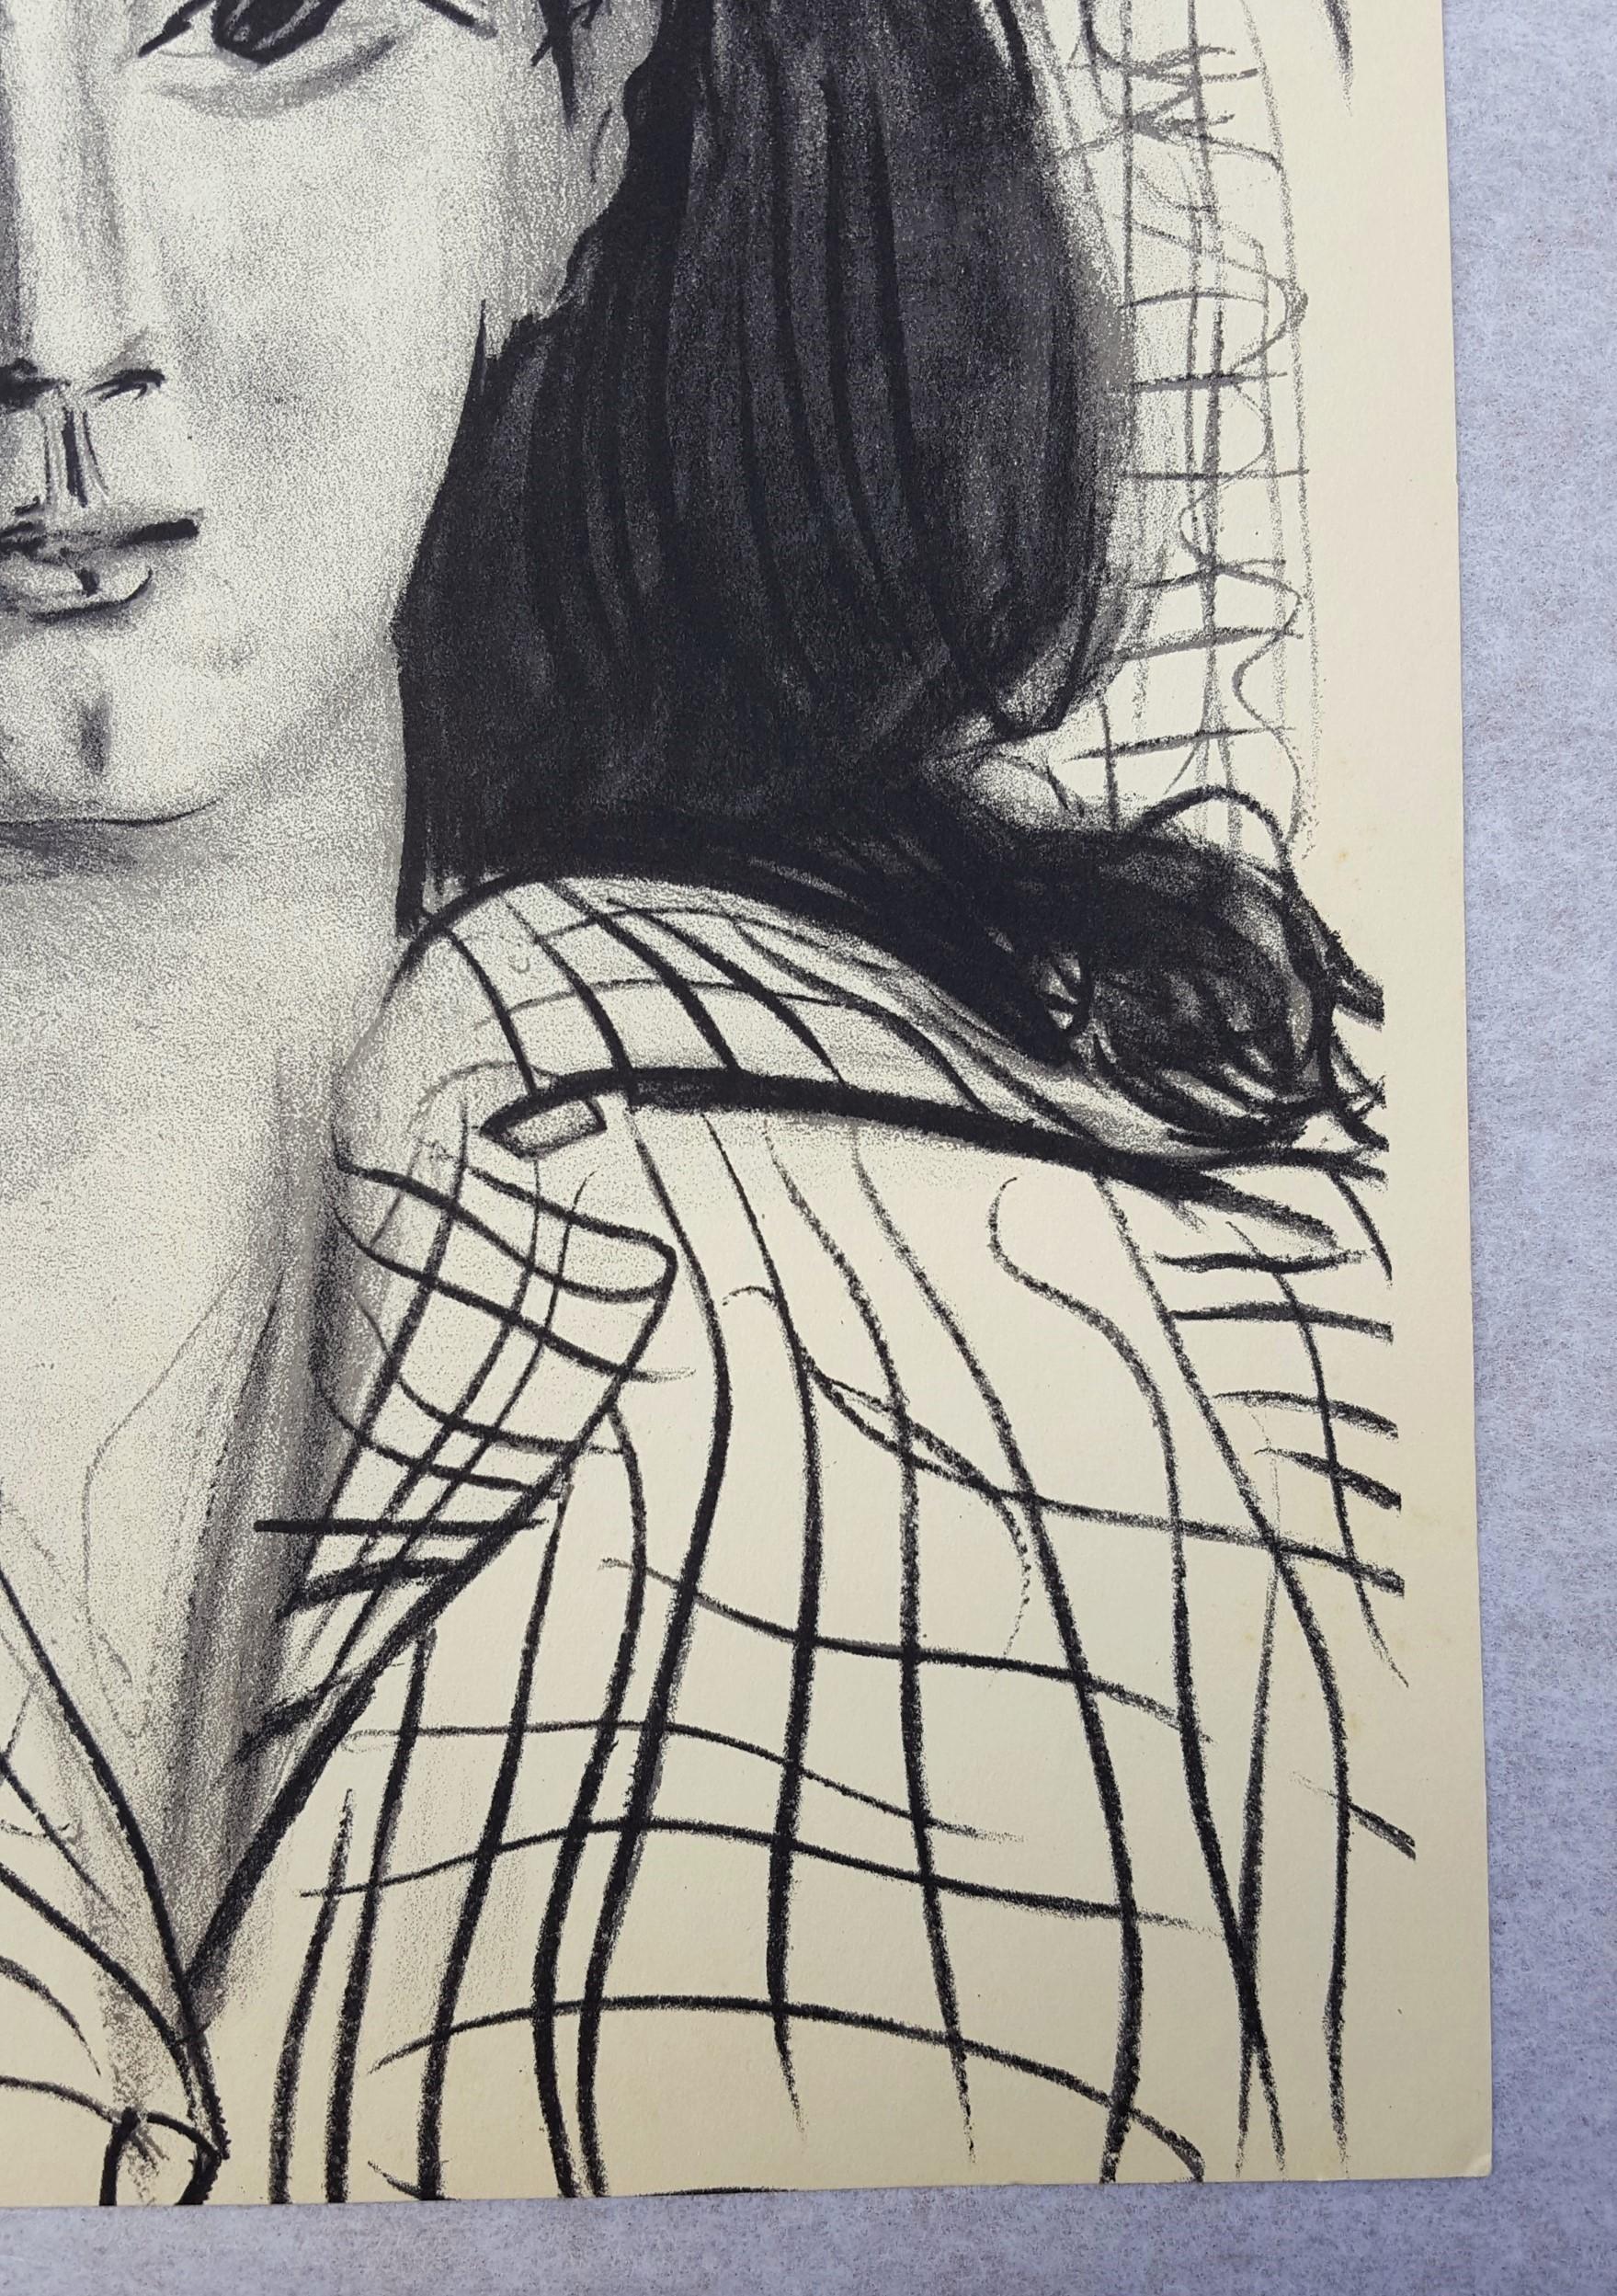 Jacqueline - Beige Portrait Print by (after) Pablo Picasso